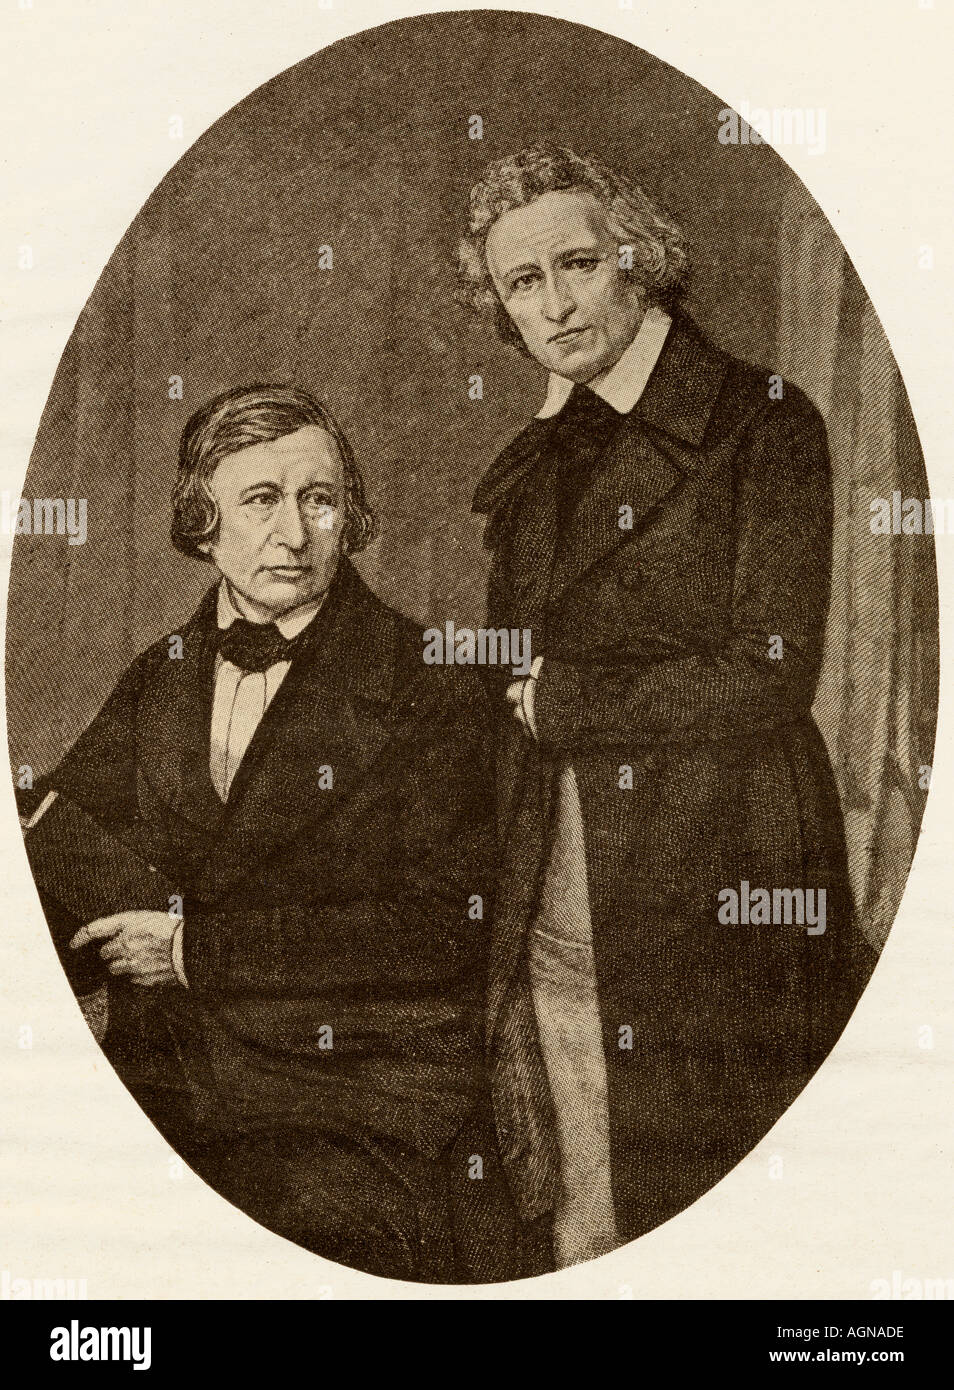 Frères Grimm. Jacob Ludwig Karl Grimm, 1785 -1863 et Karl Wilhelm Grimm, 1786-1859. Banque D'Images